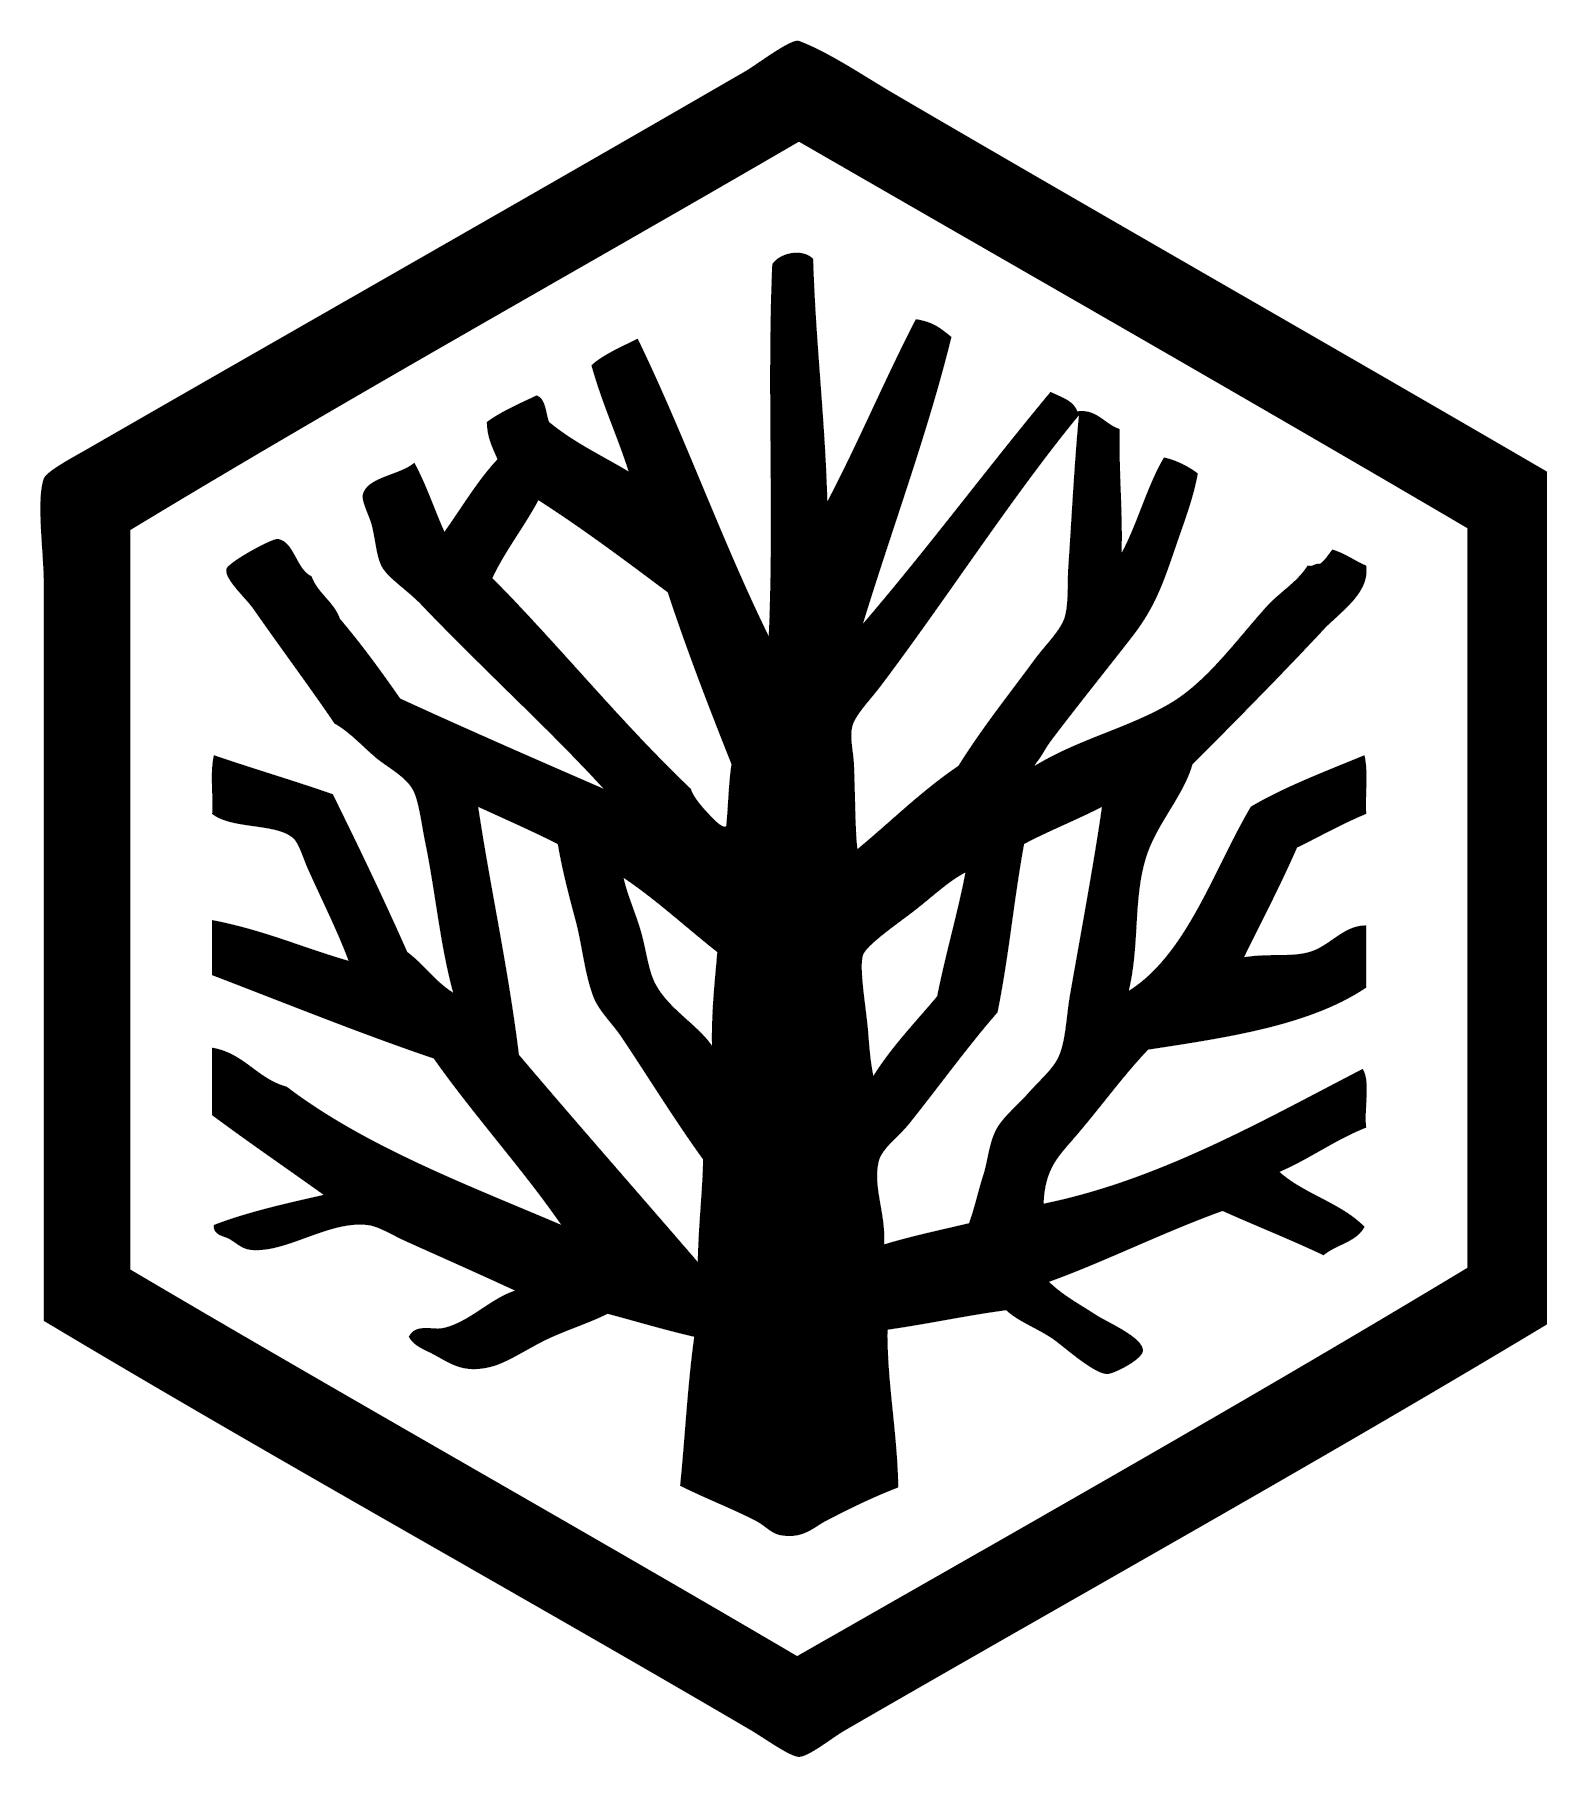 Honey tree logo